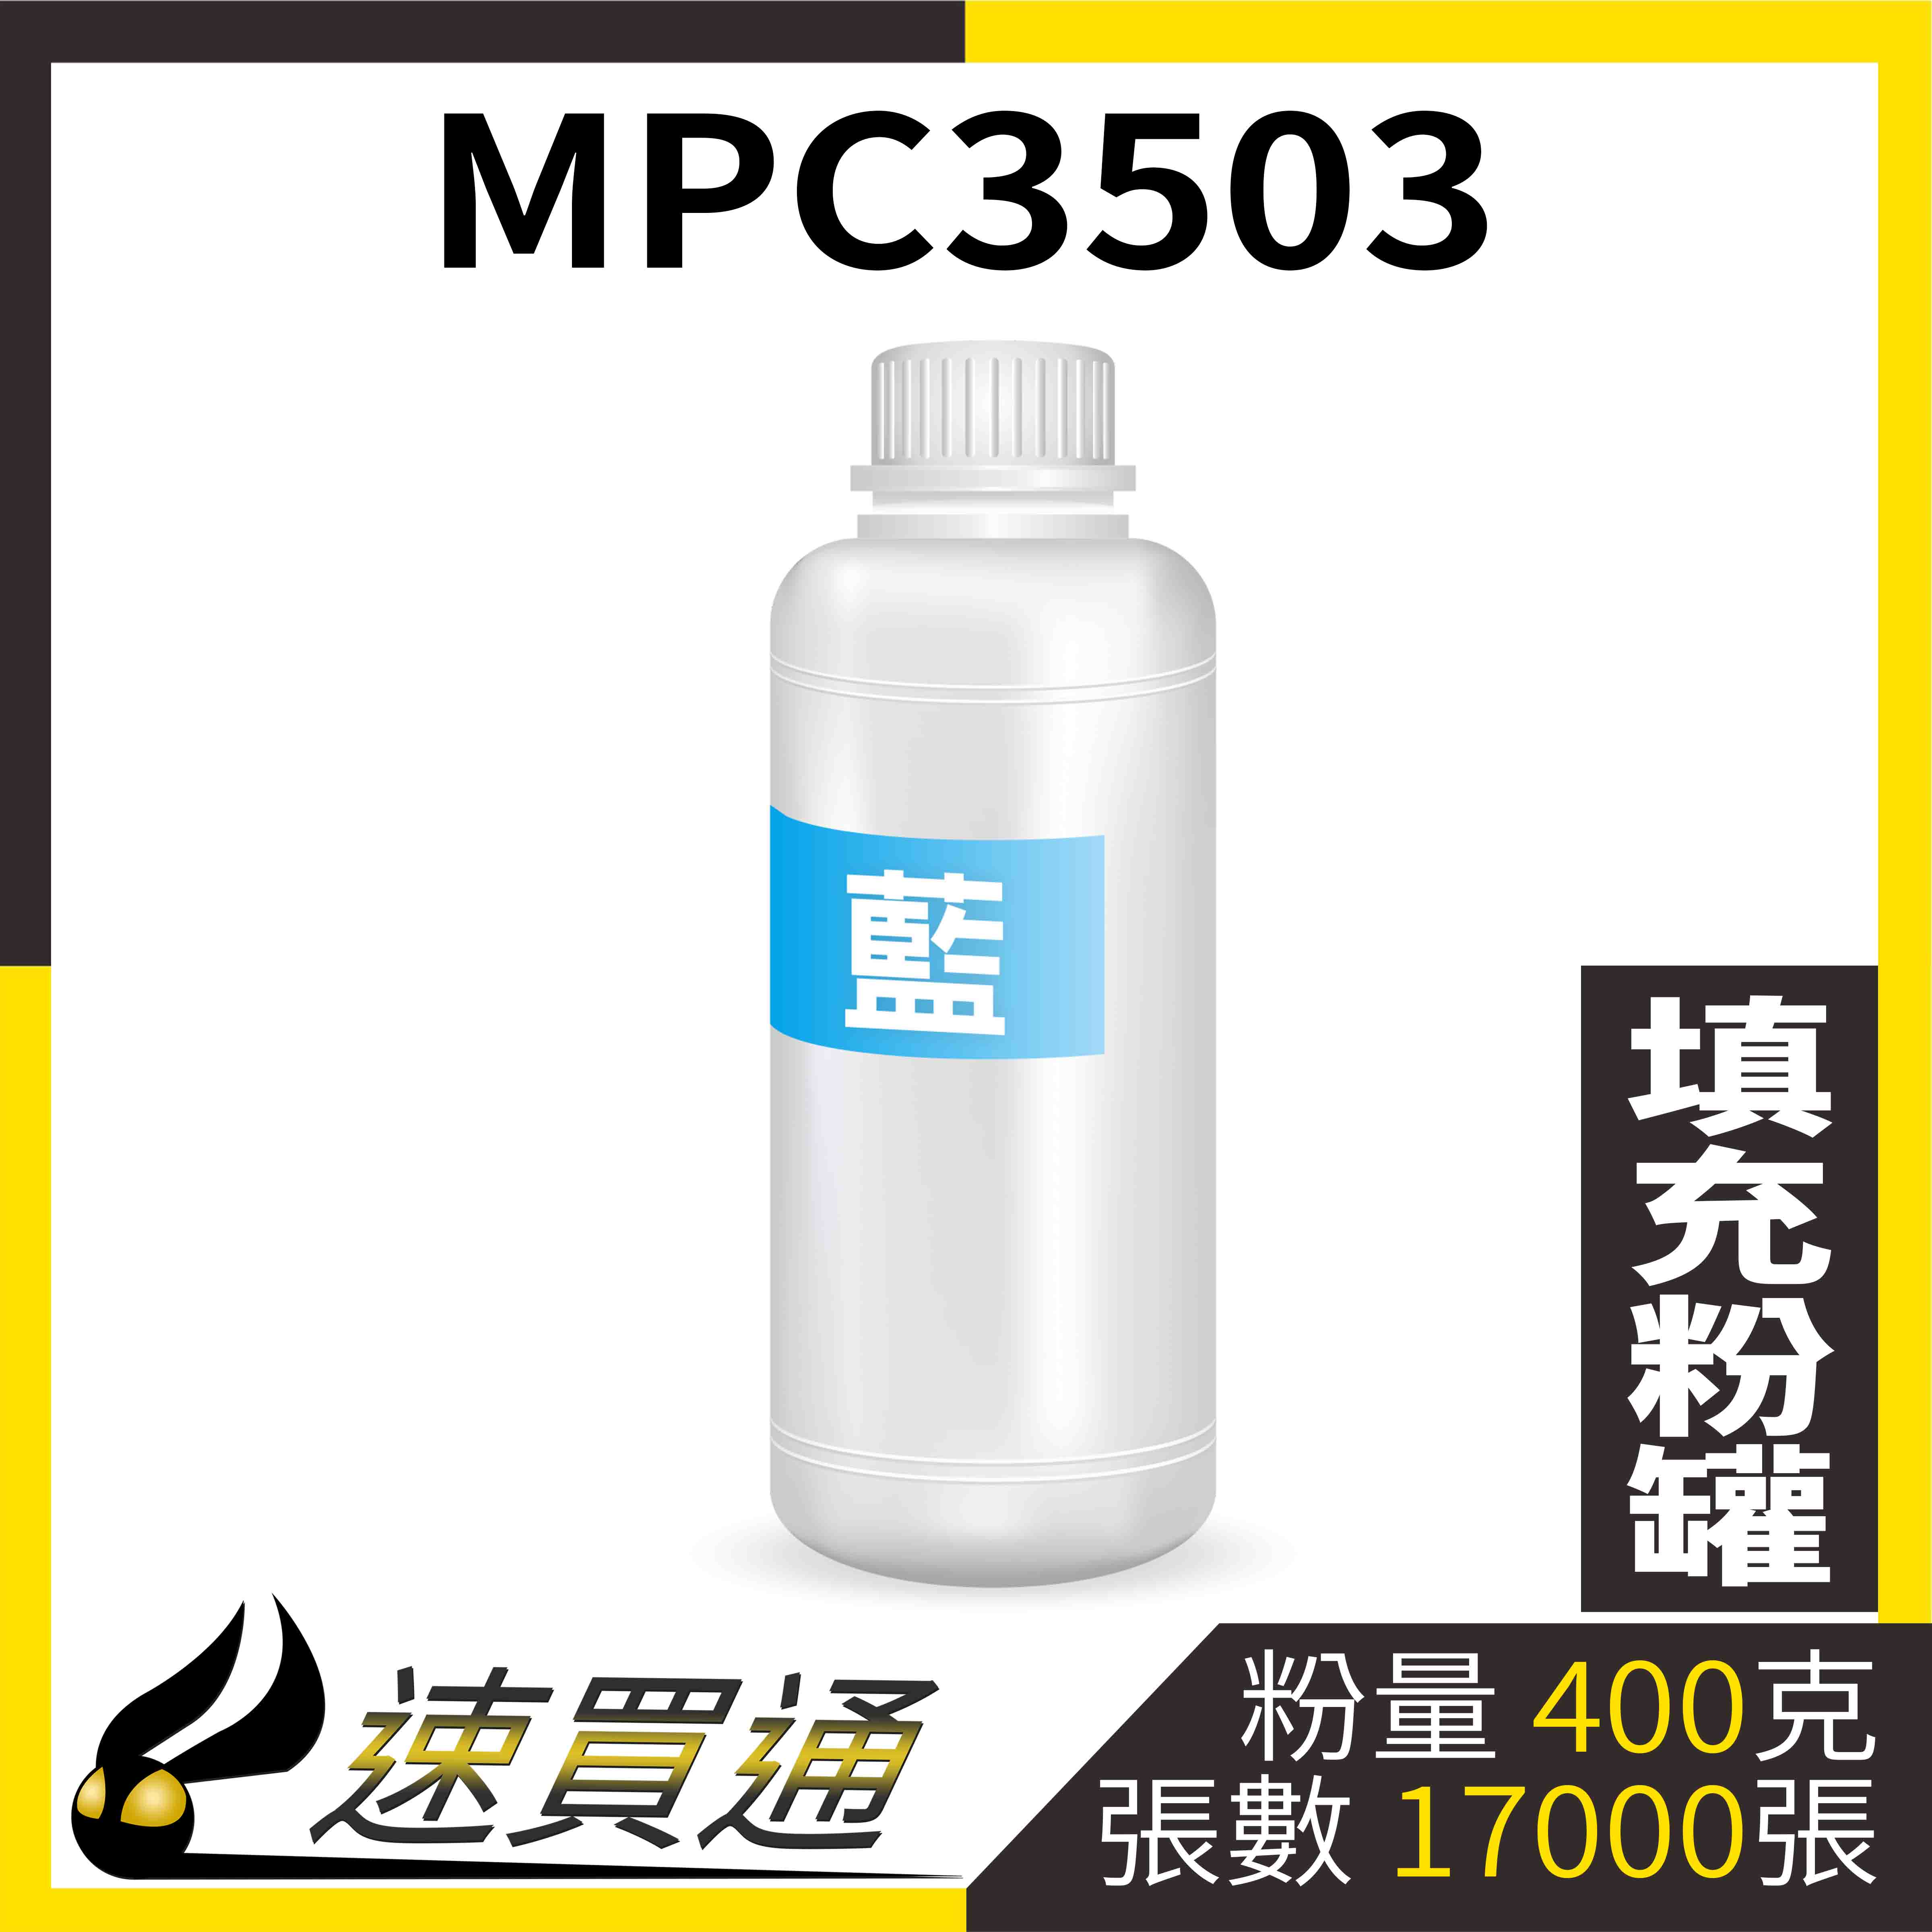 【速買通】RICOH MPC3503 藍 填充式碳粉罐